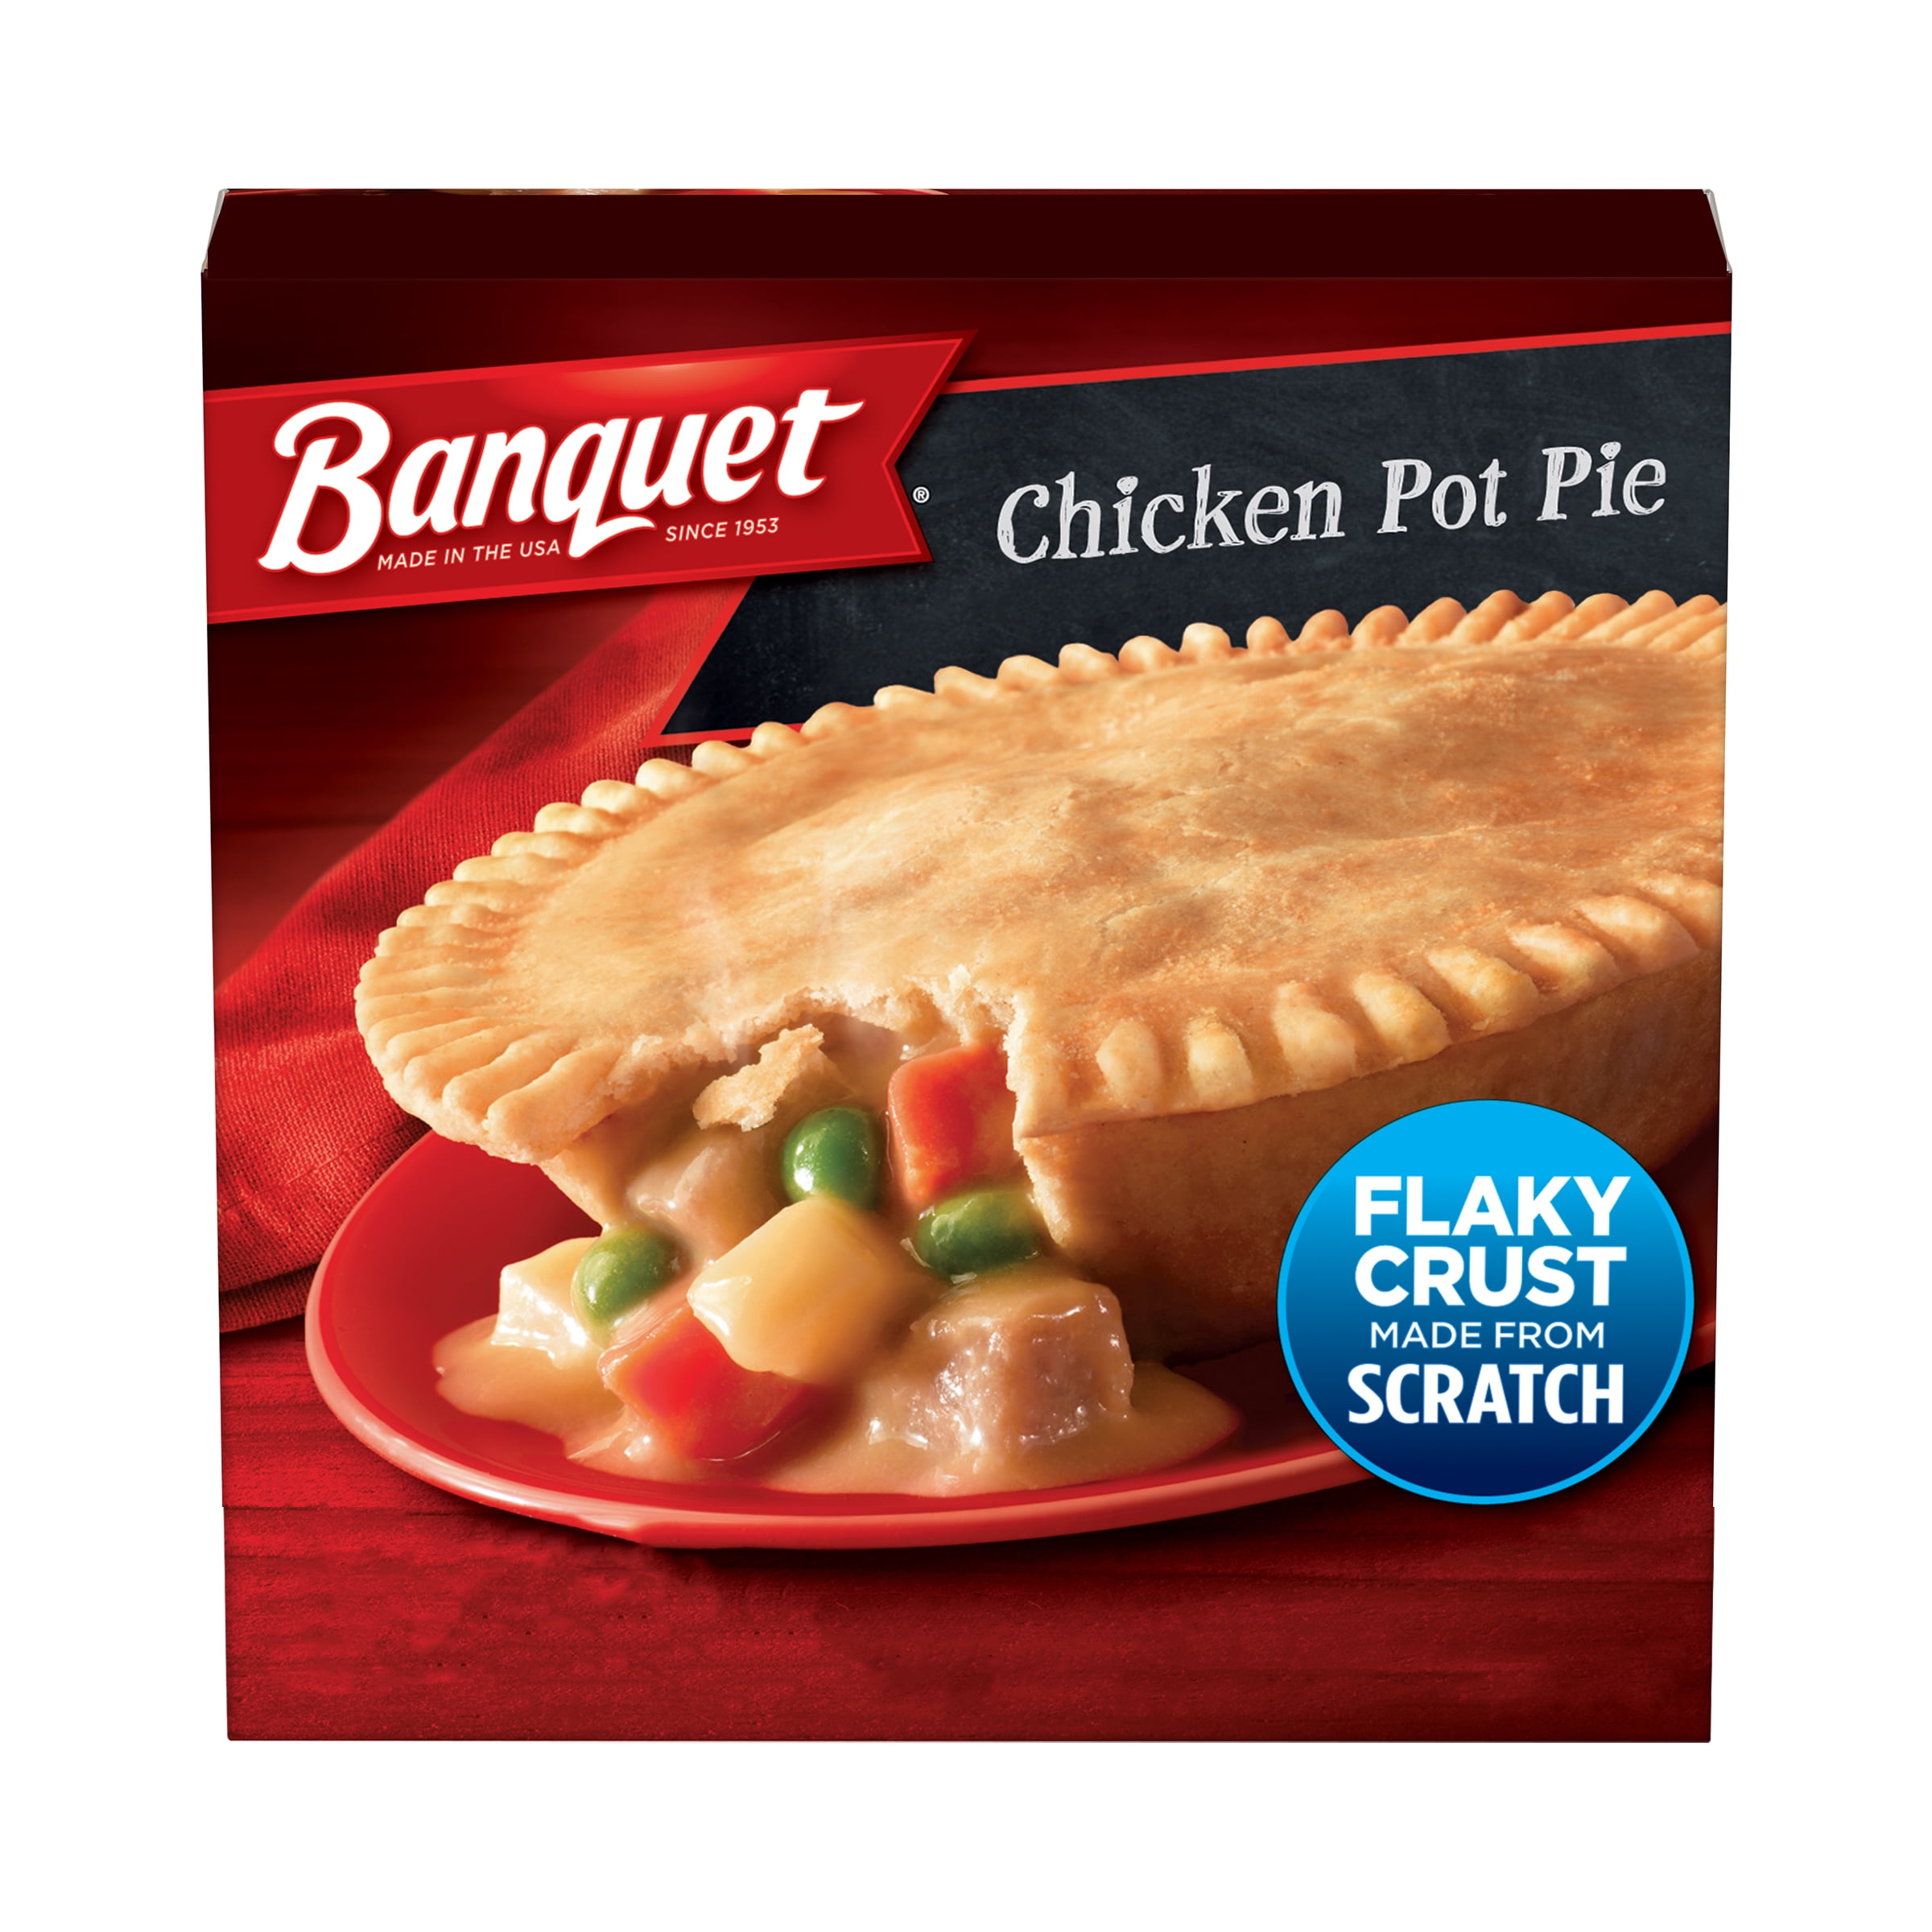 Banquet Chicken Pot Pie Frozen Meal, 7 oz (Frozen)